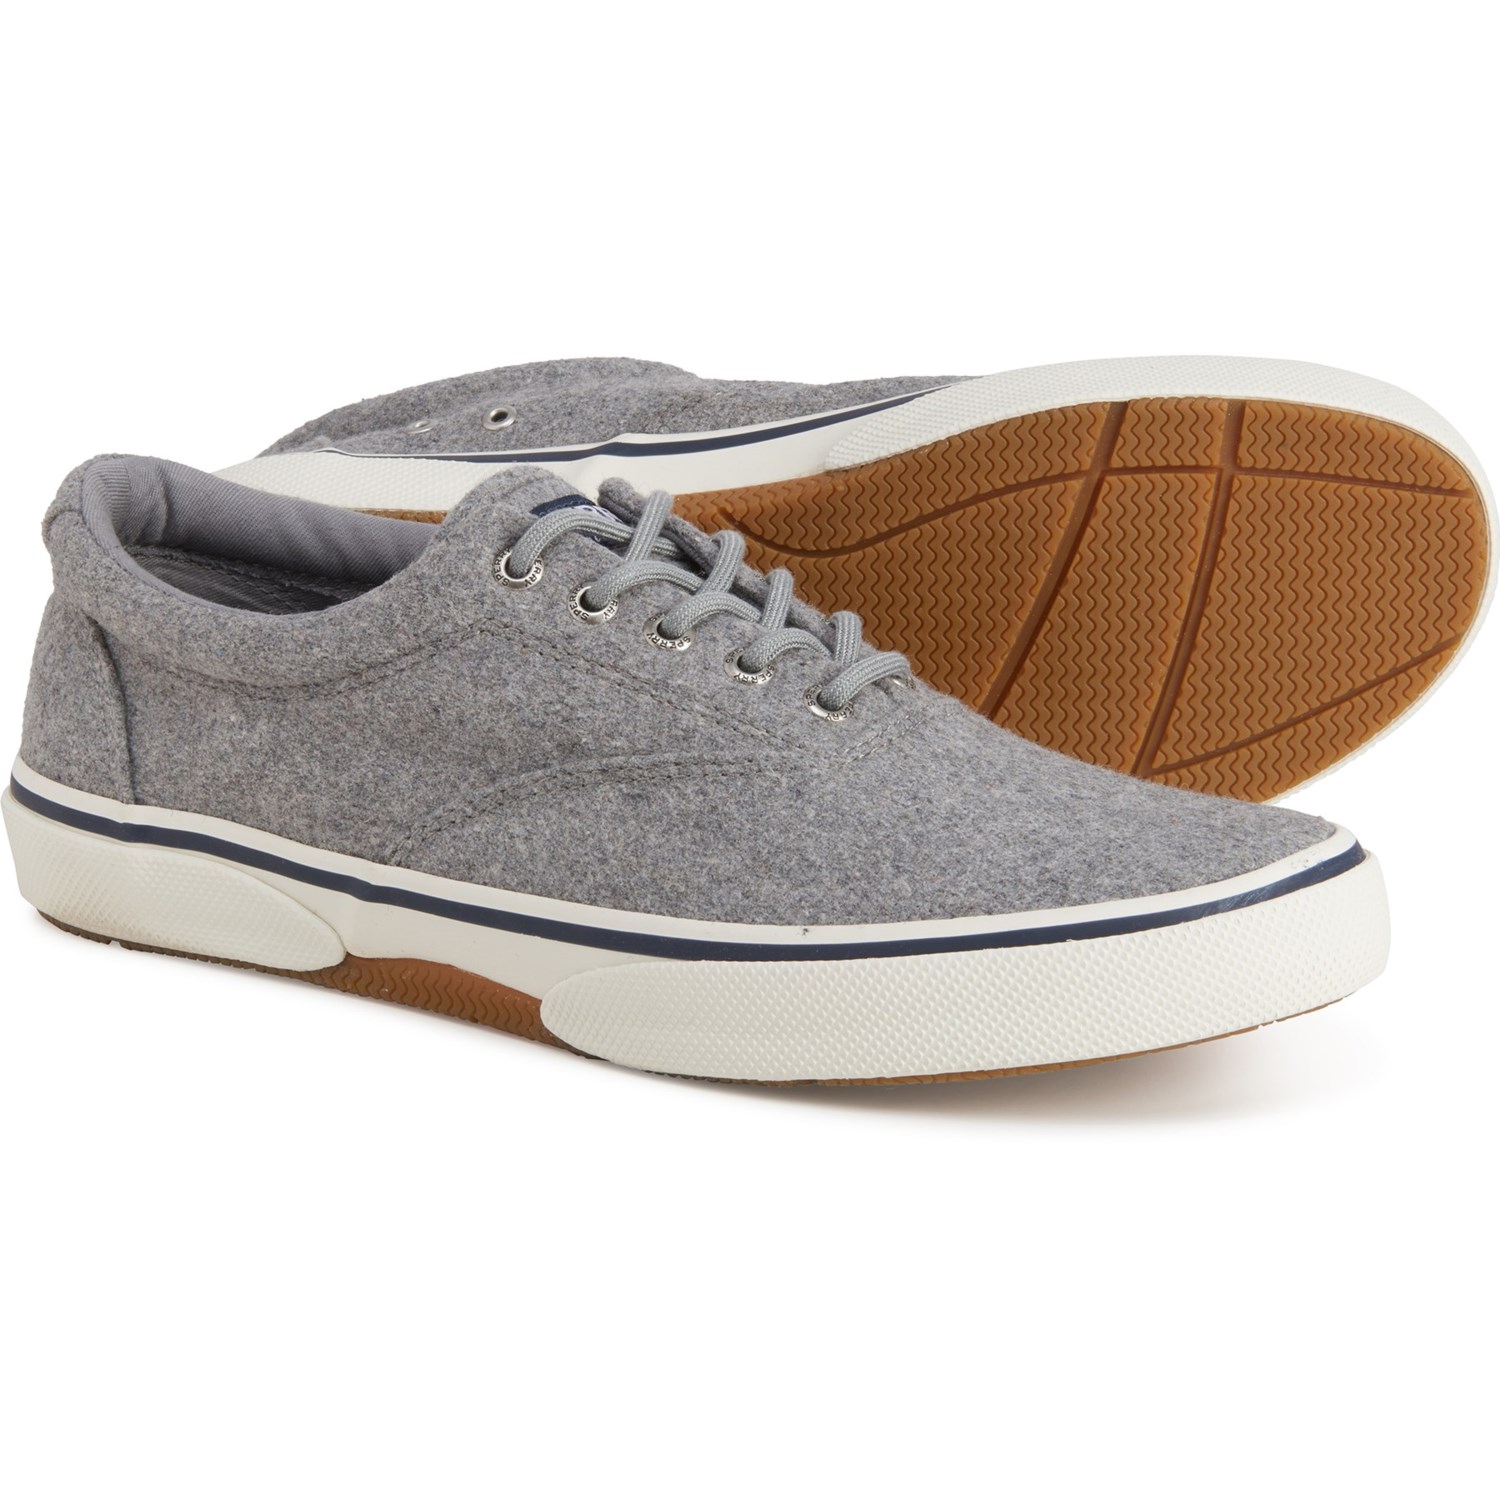 Sperry Halyard CVO Wool Sneakers (For Men)